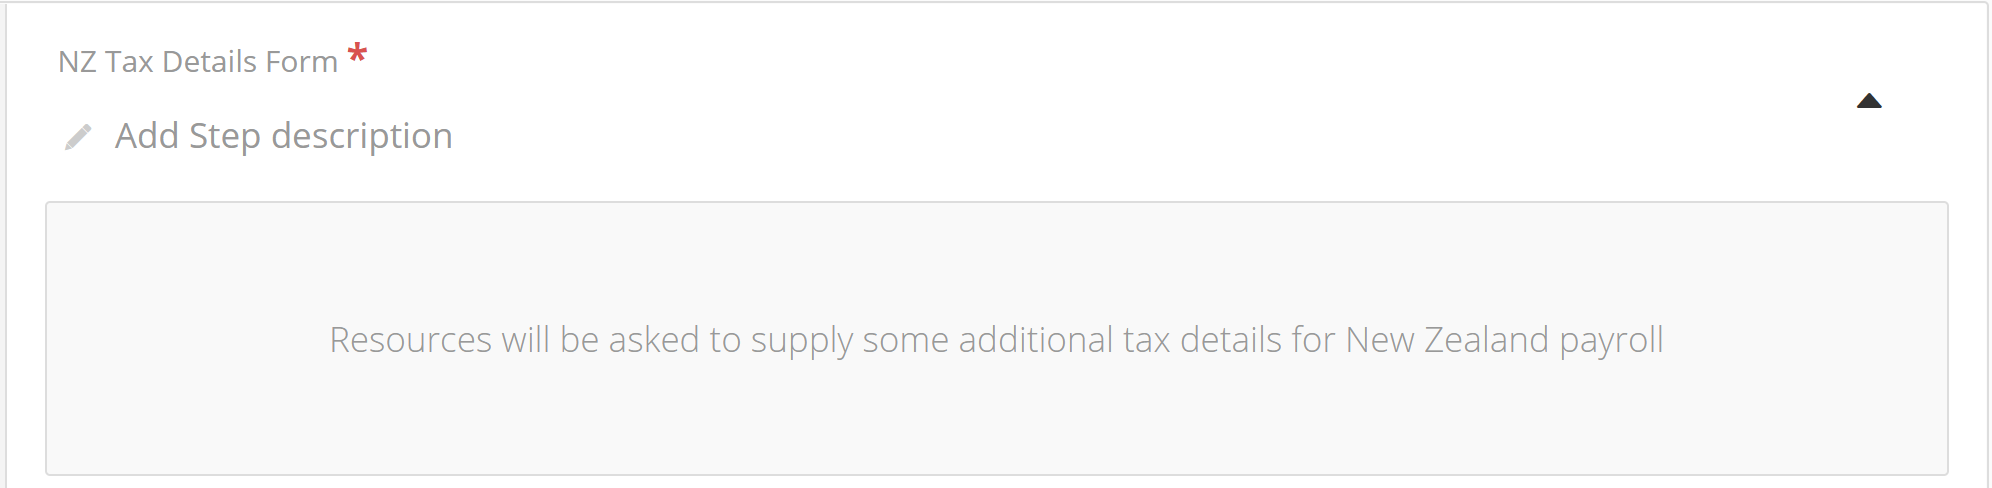 NZ_Tax_Details.png